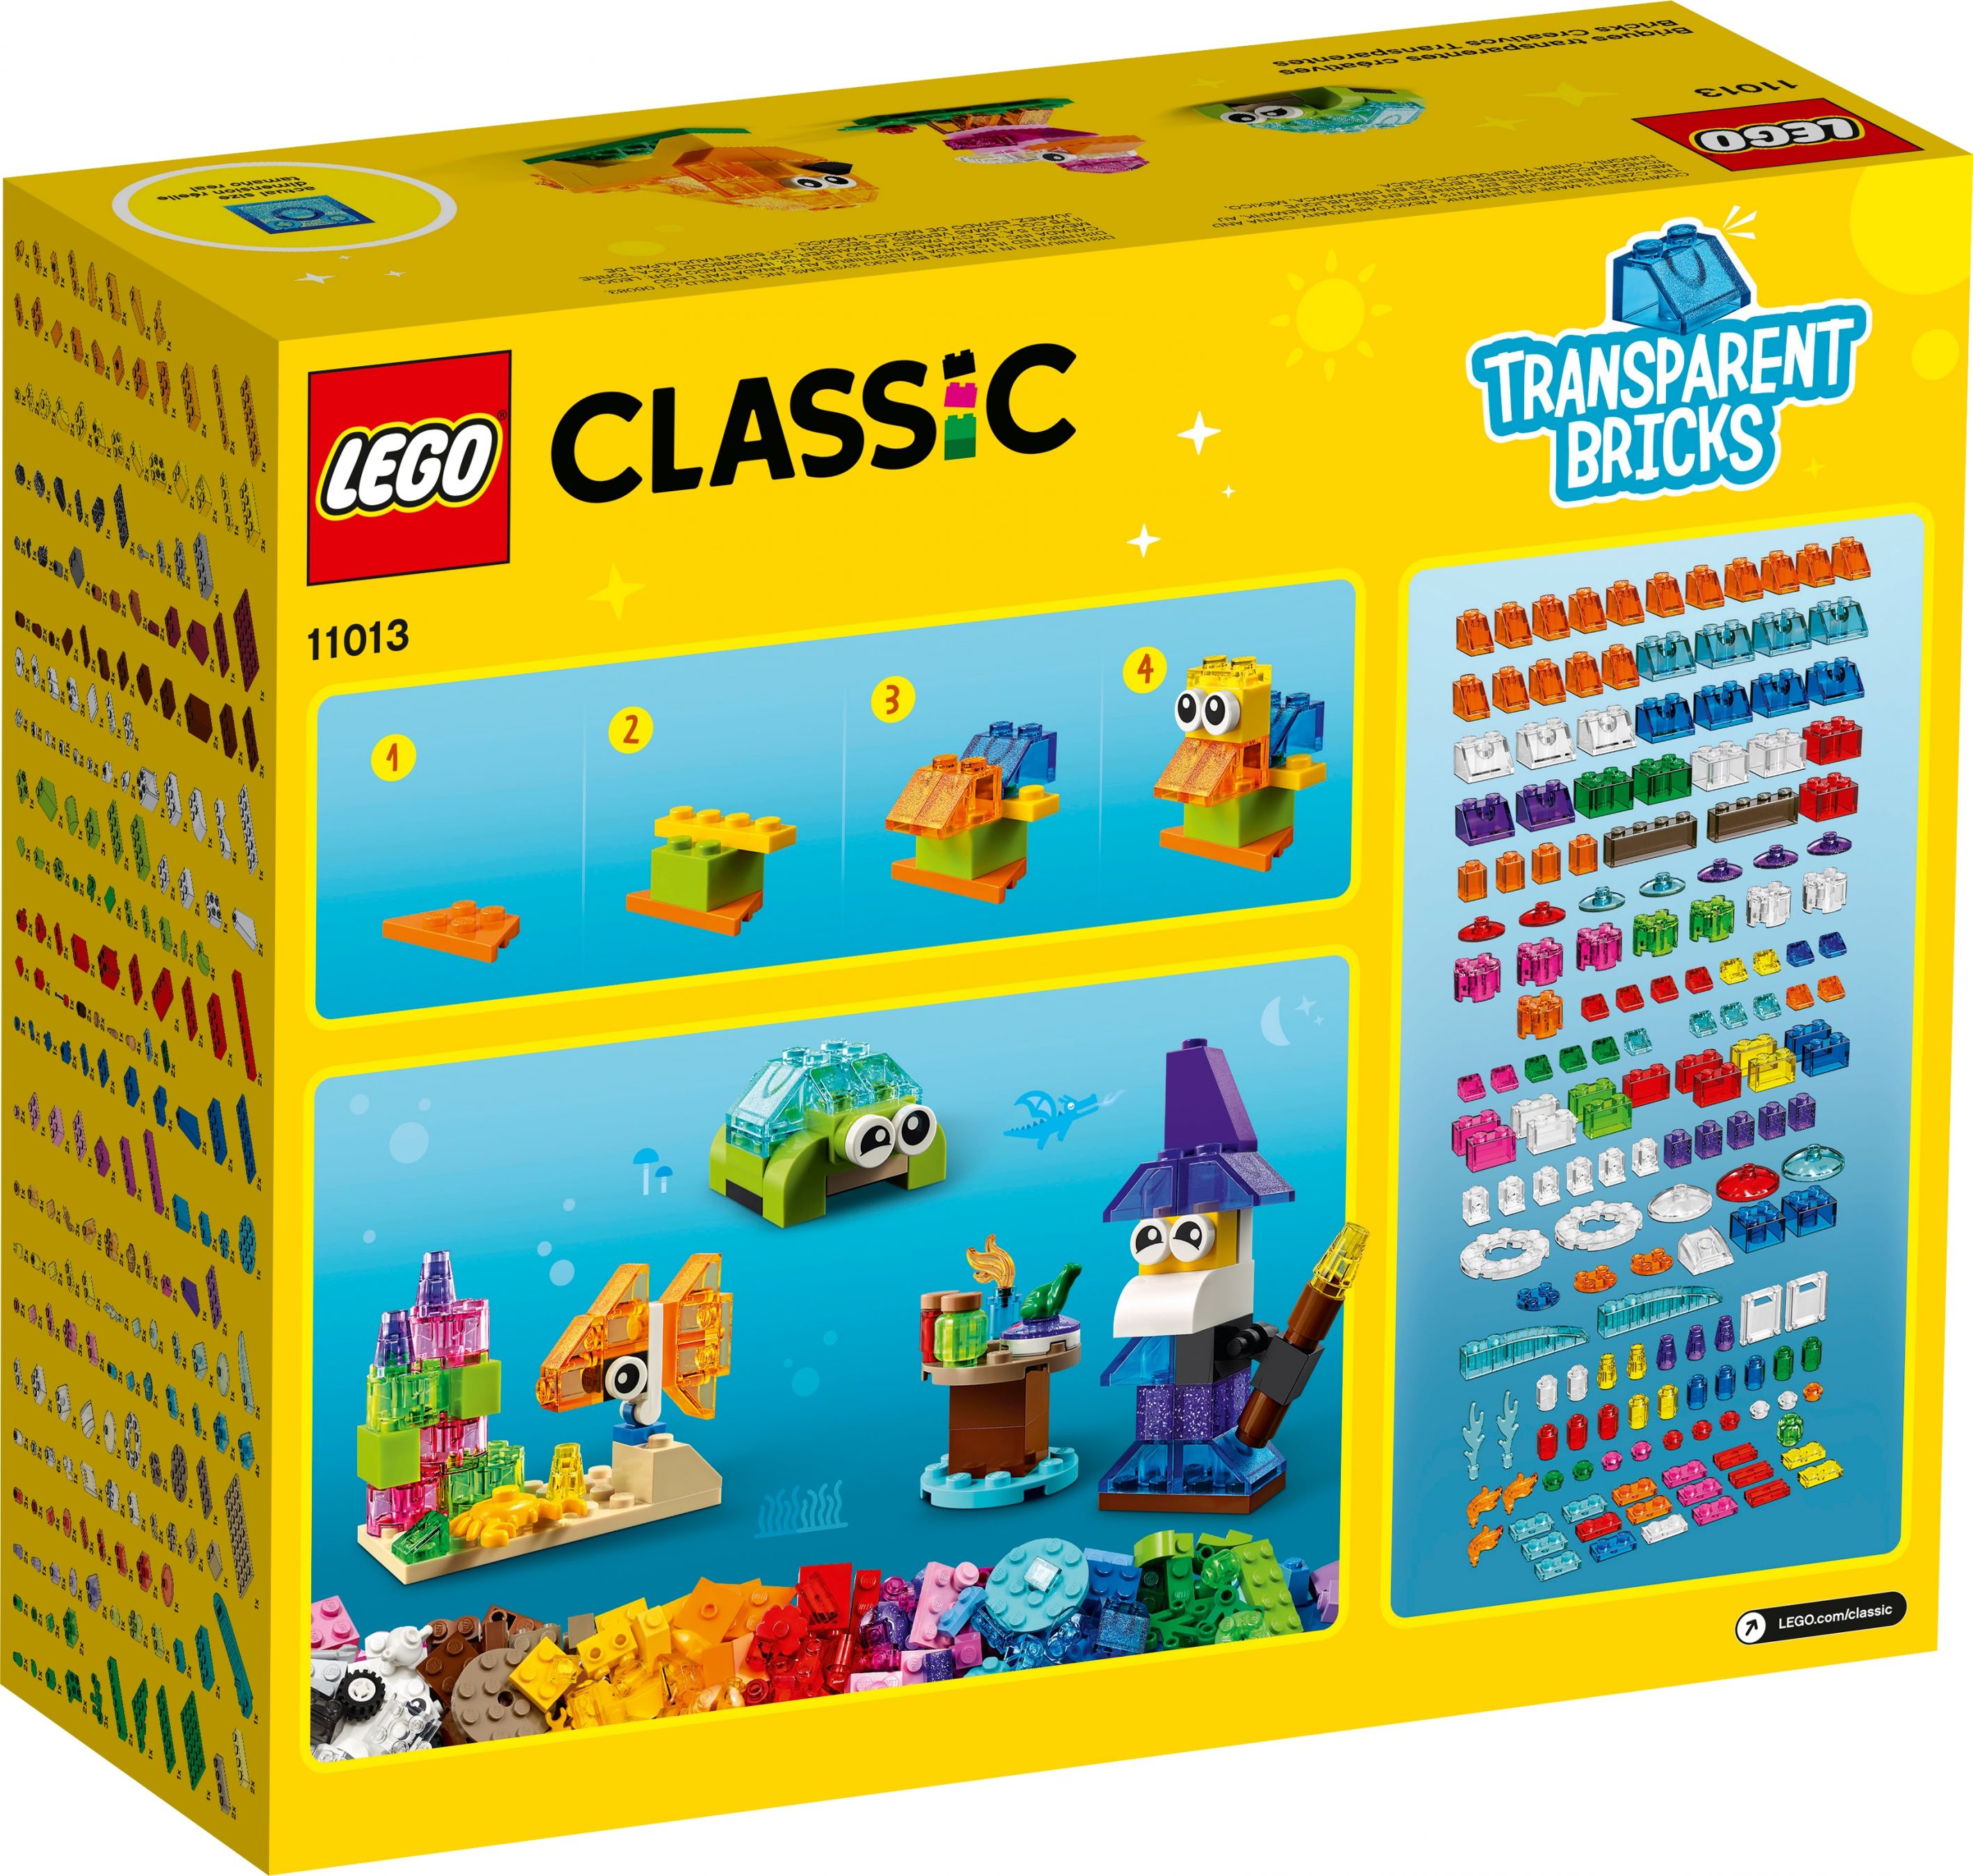 LEGO Classic 11013 Kreativ-Bauset mit durchsichtigen Steinen LEGO_11013_box5_v39.jpg